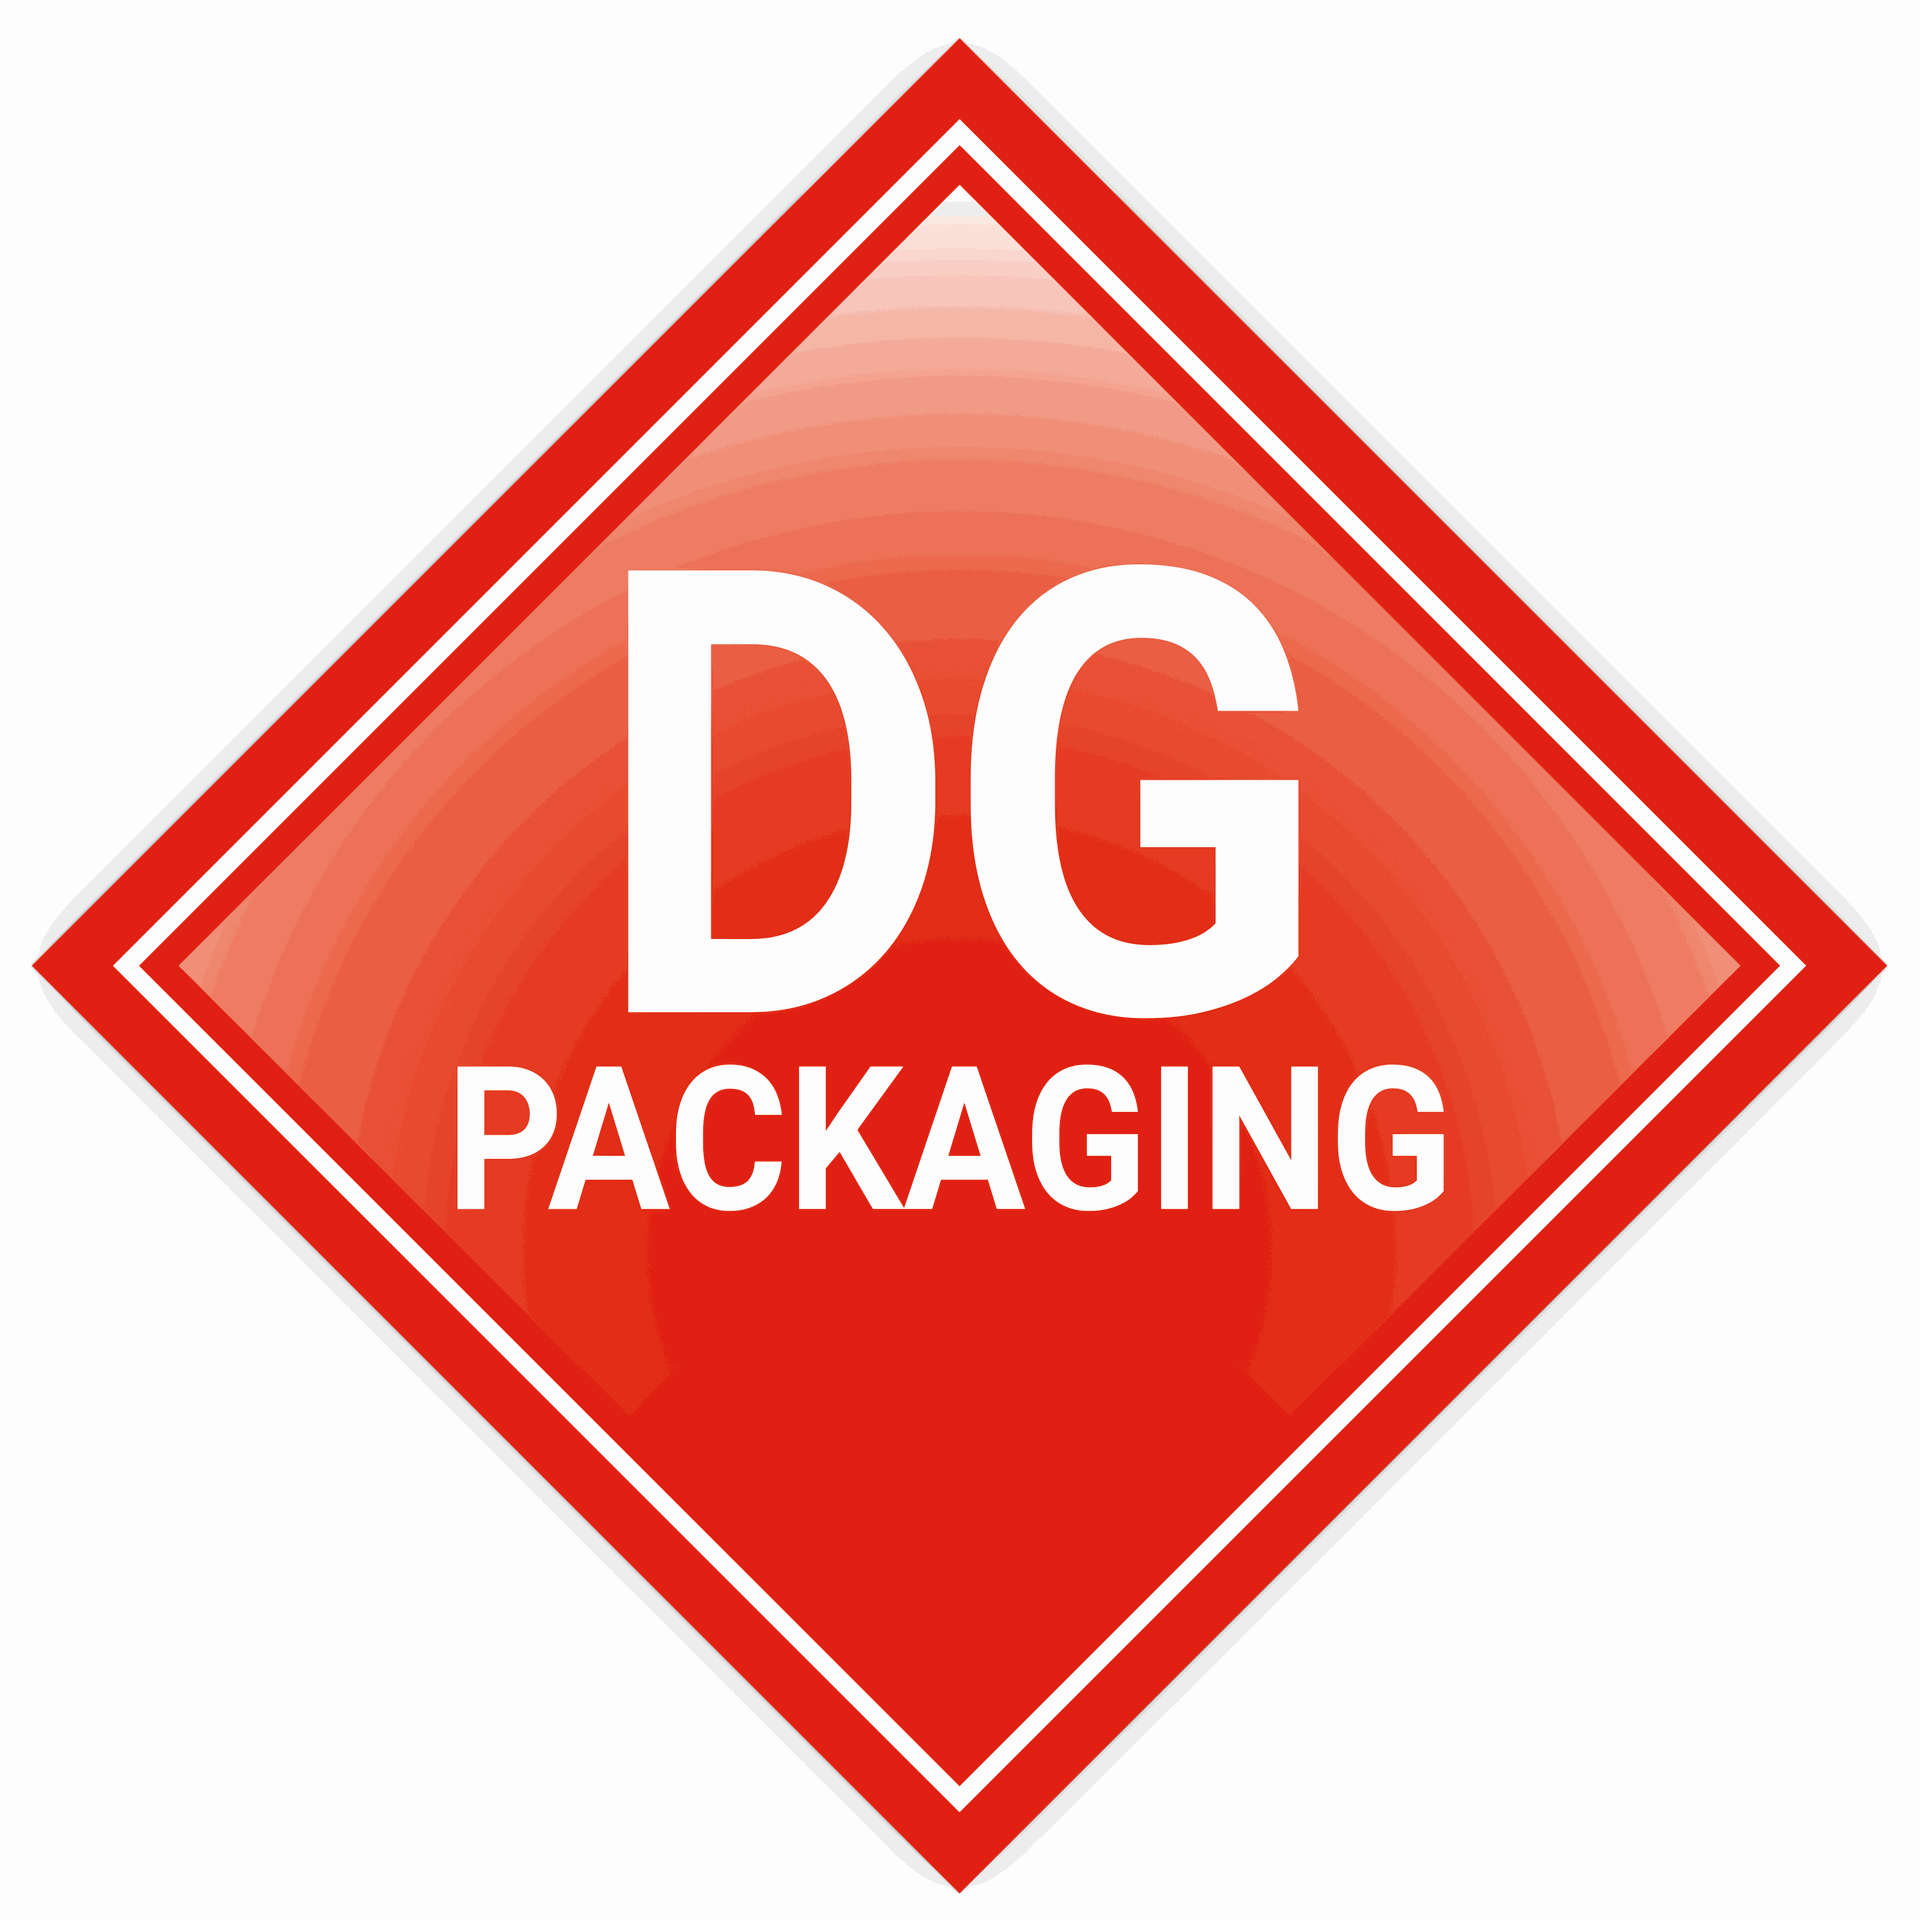 DG Packaging | eLearning Portal